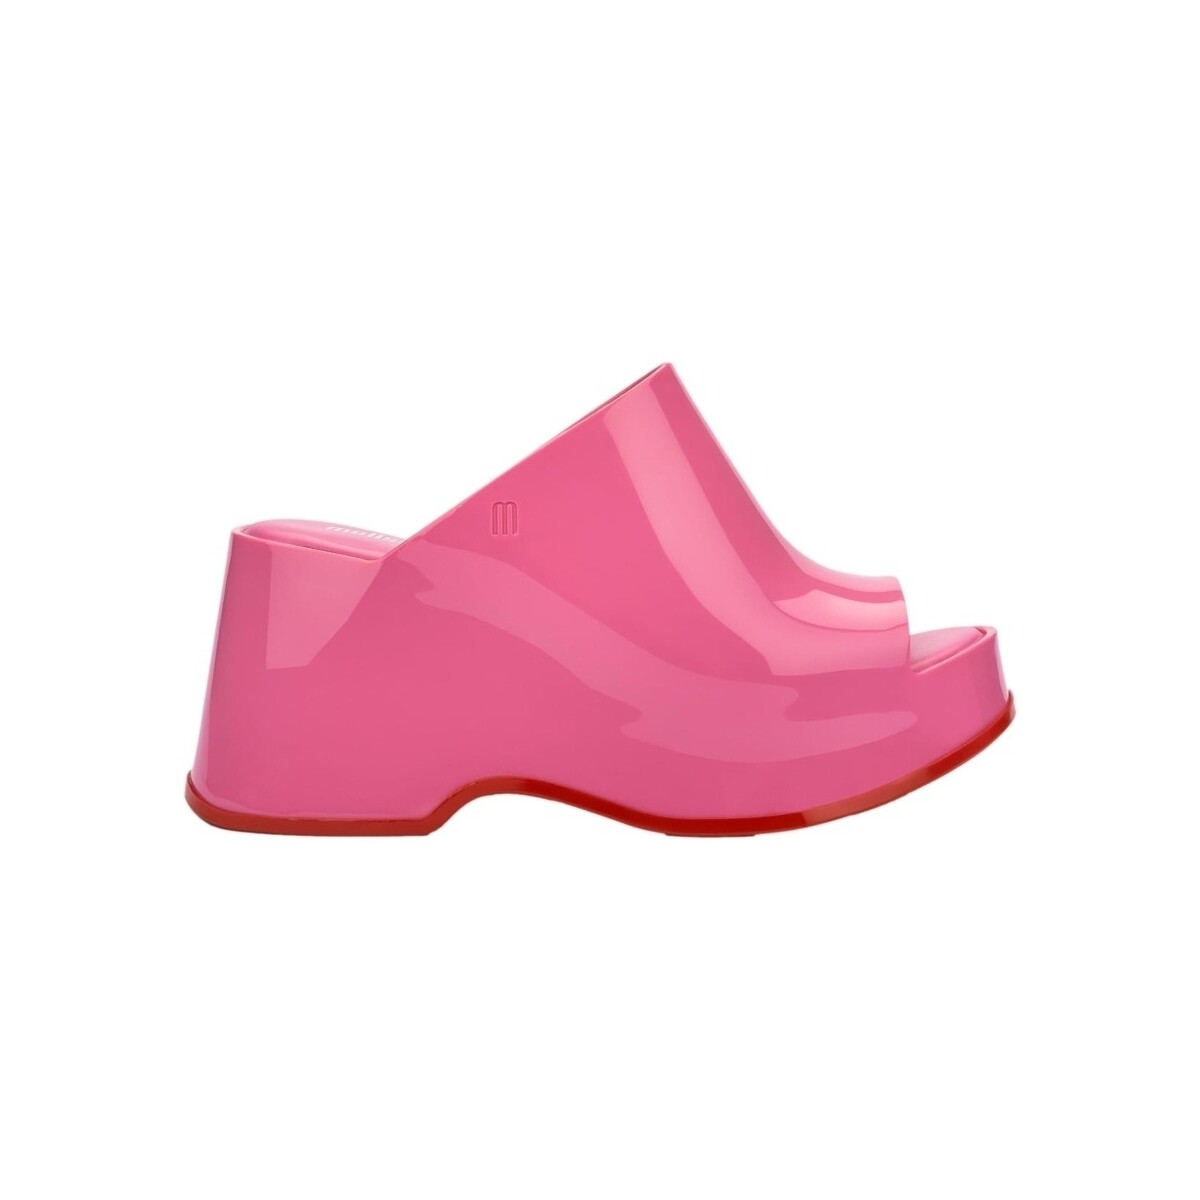 Schuhe Damen Sandalen / Sandaletten Melissa Patty Fem - Pink/Red Rosa